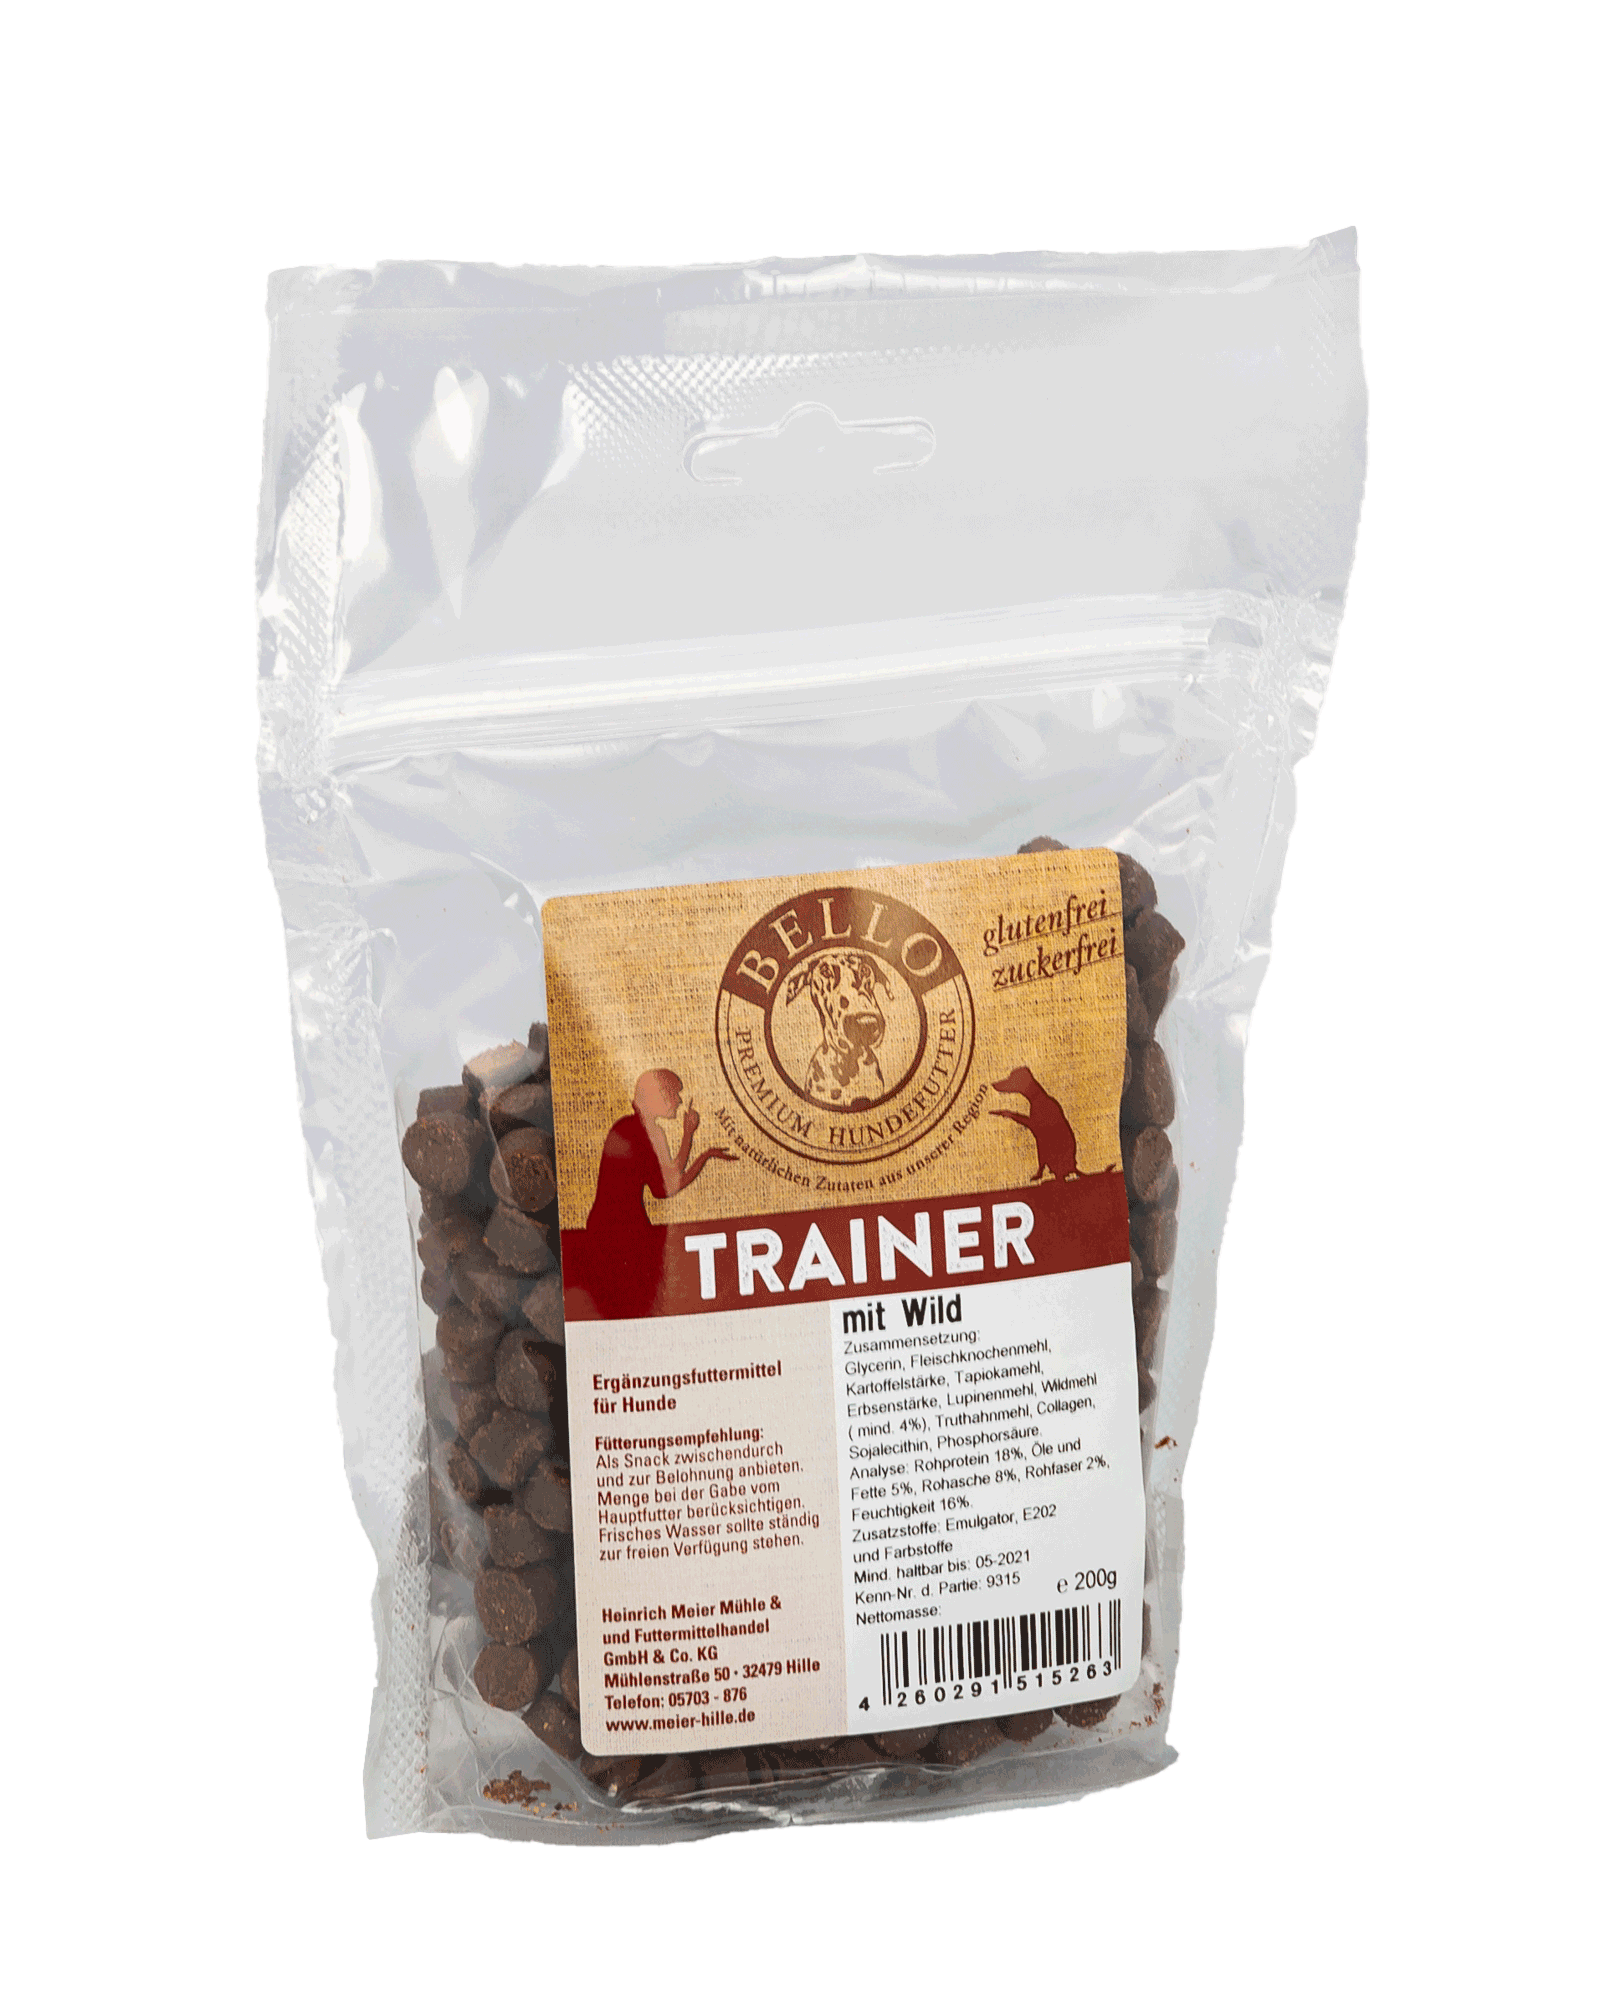 Transparenter Beutel mit Etikett und abgefüllt mit Hunde trainer snacks